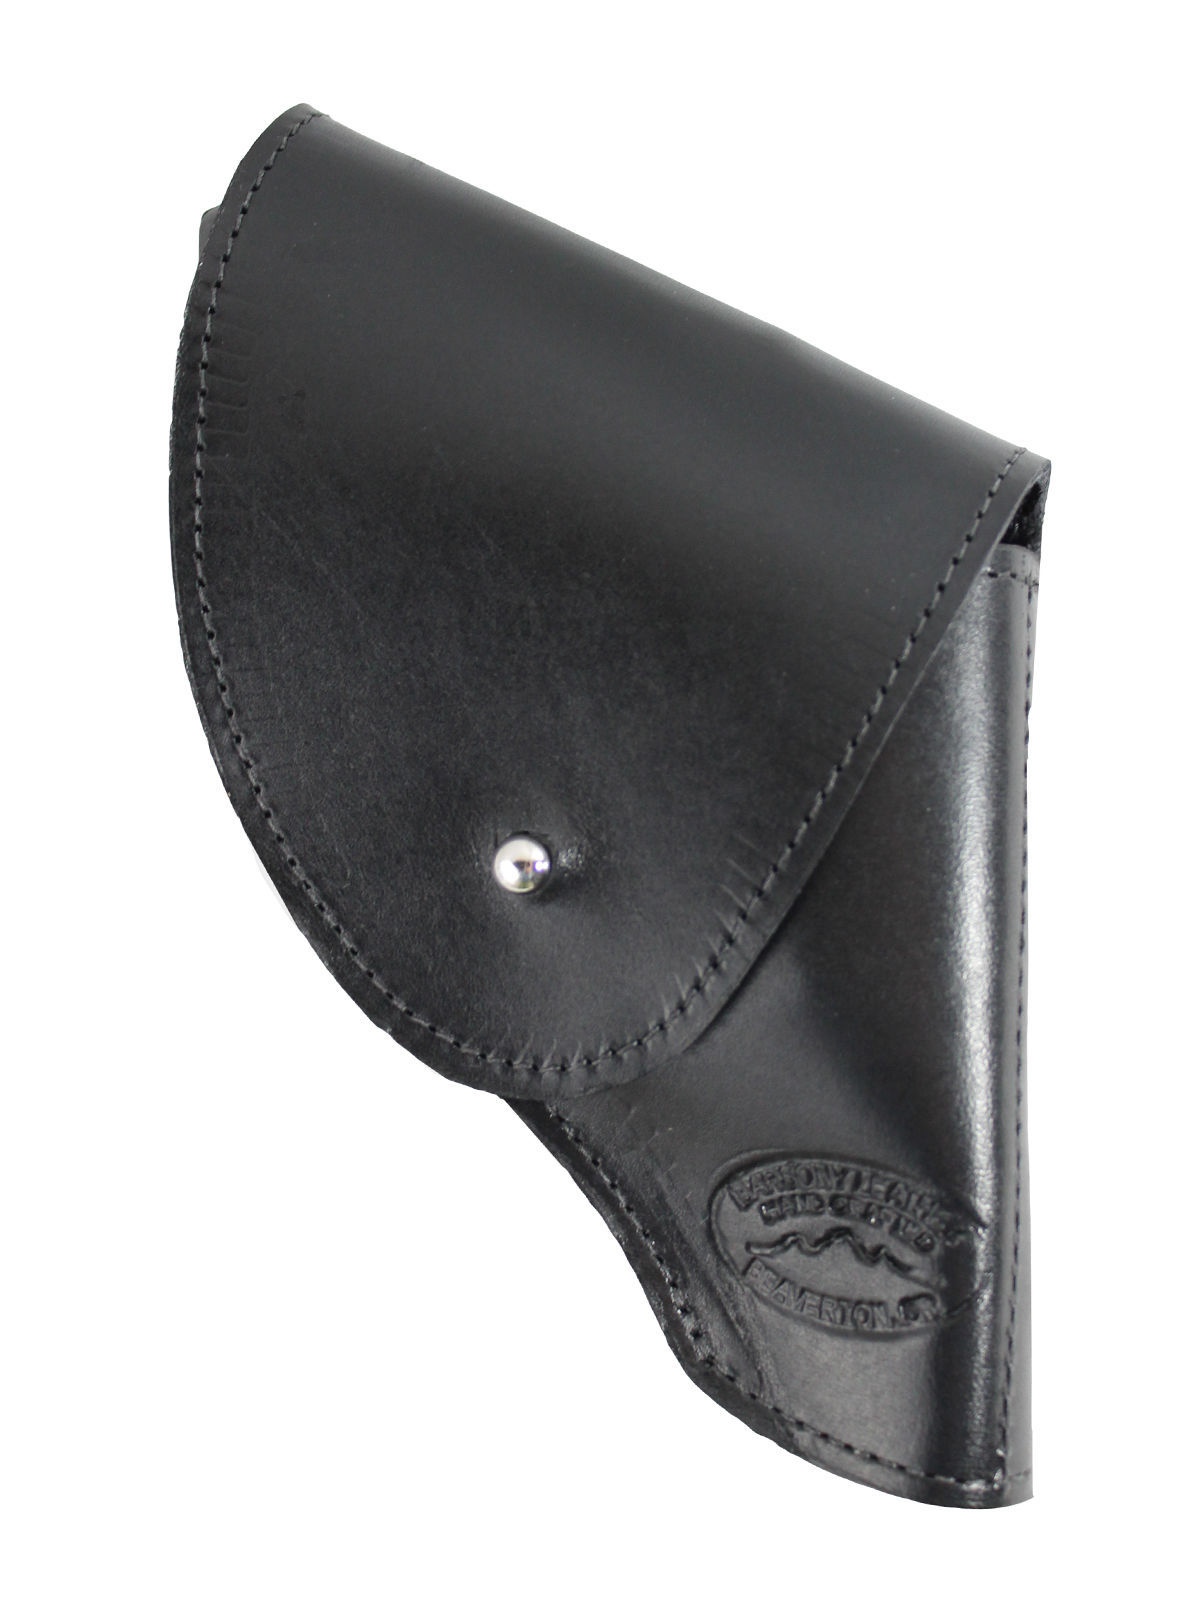 New Barsony Black Leather Pancake Holster for Colt 2" Snub Nose Revolvers 